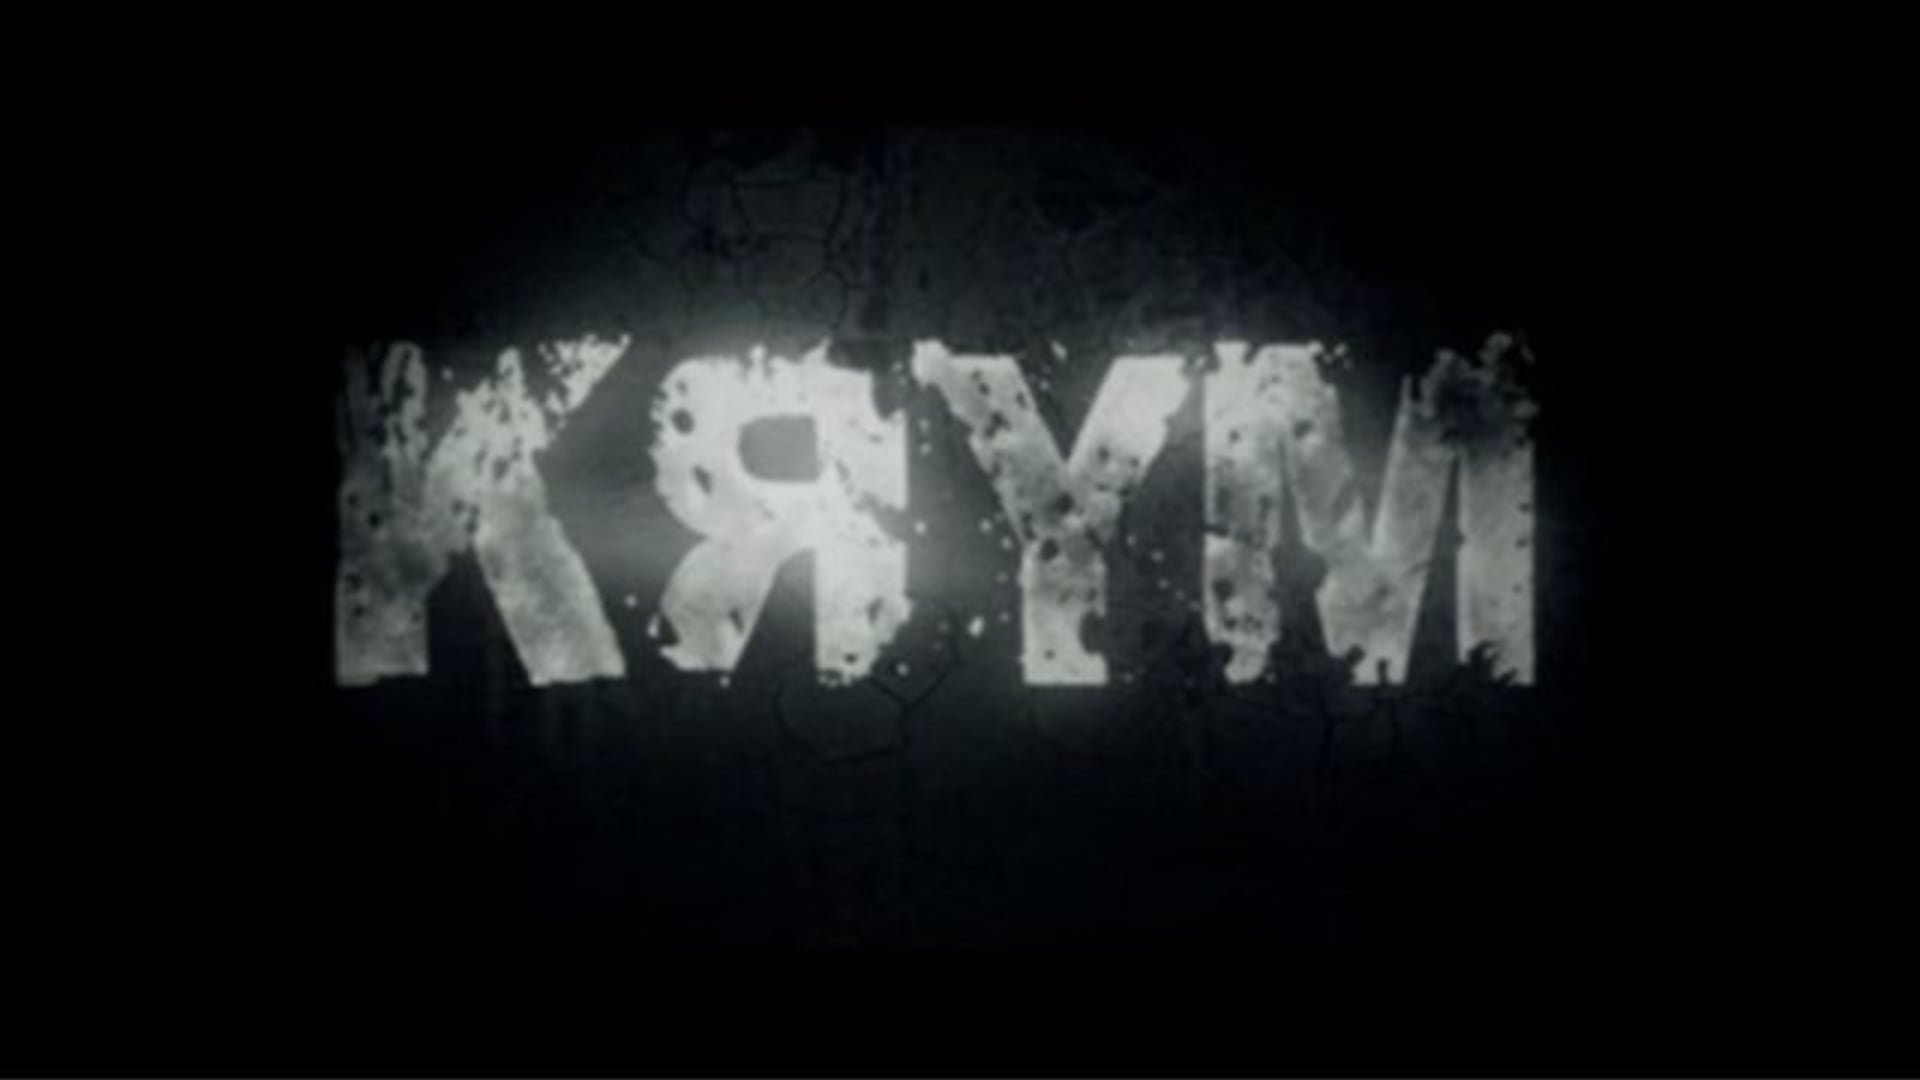 Stalker Fan movie "KRYM"